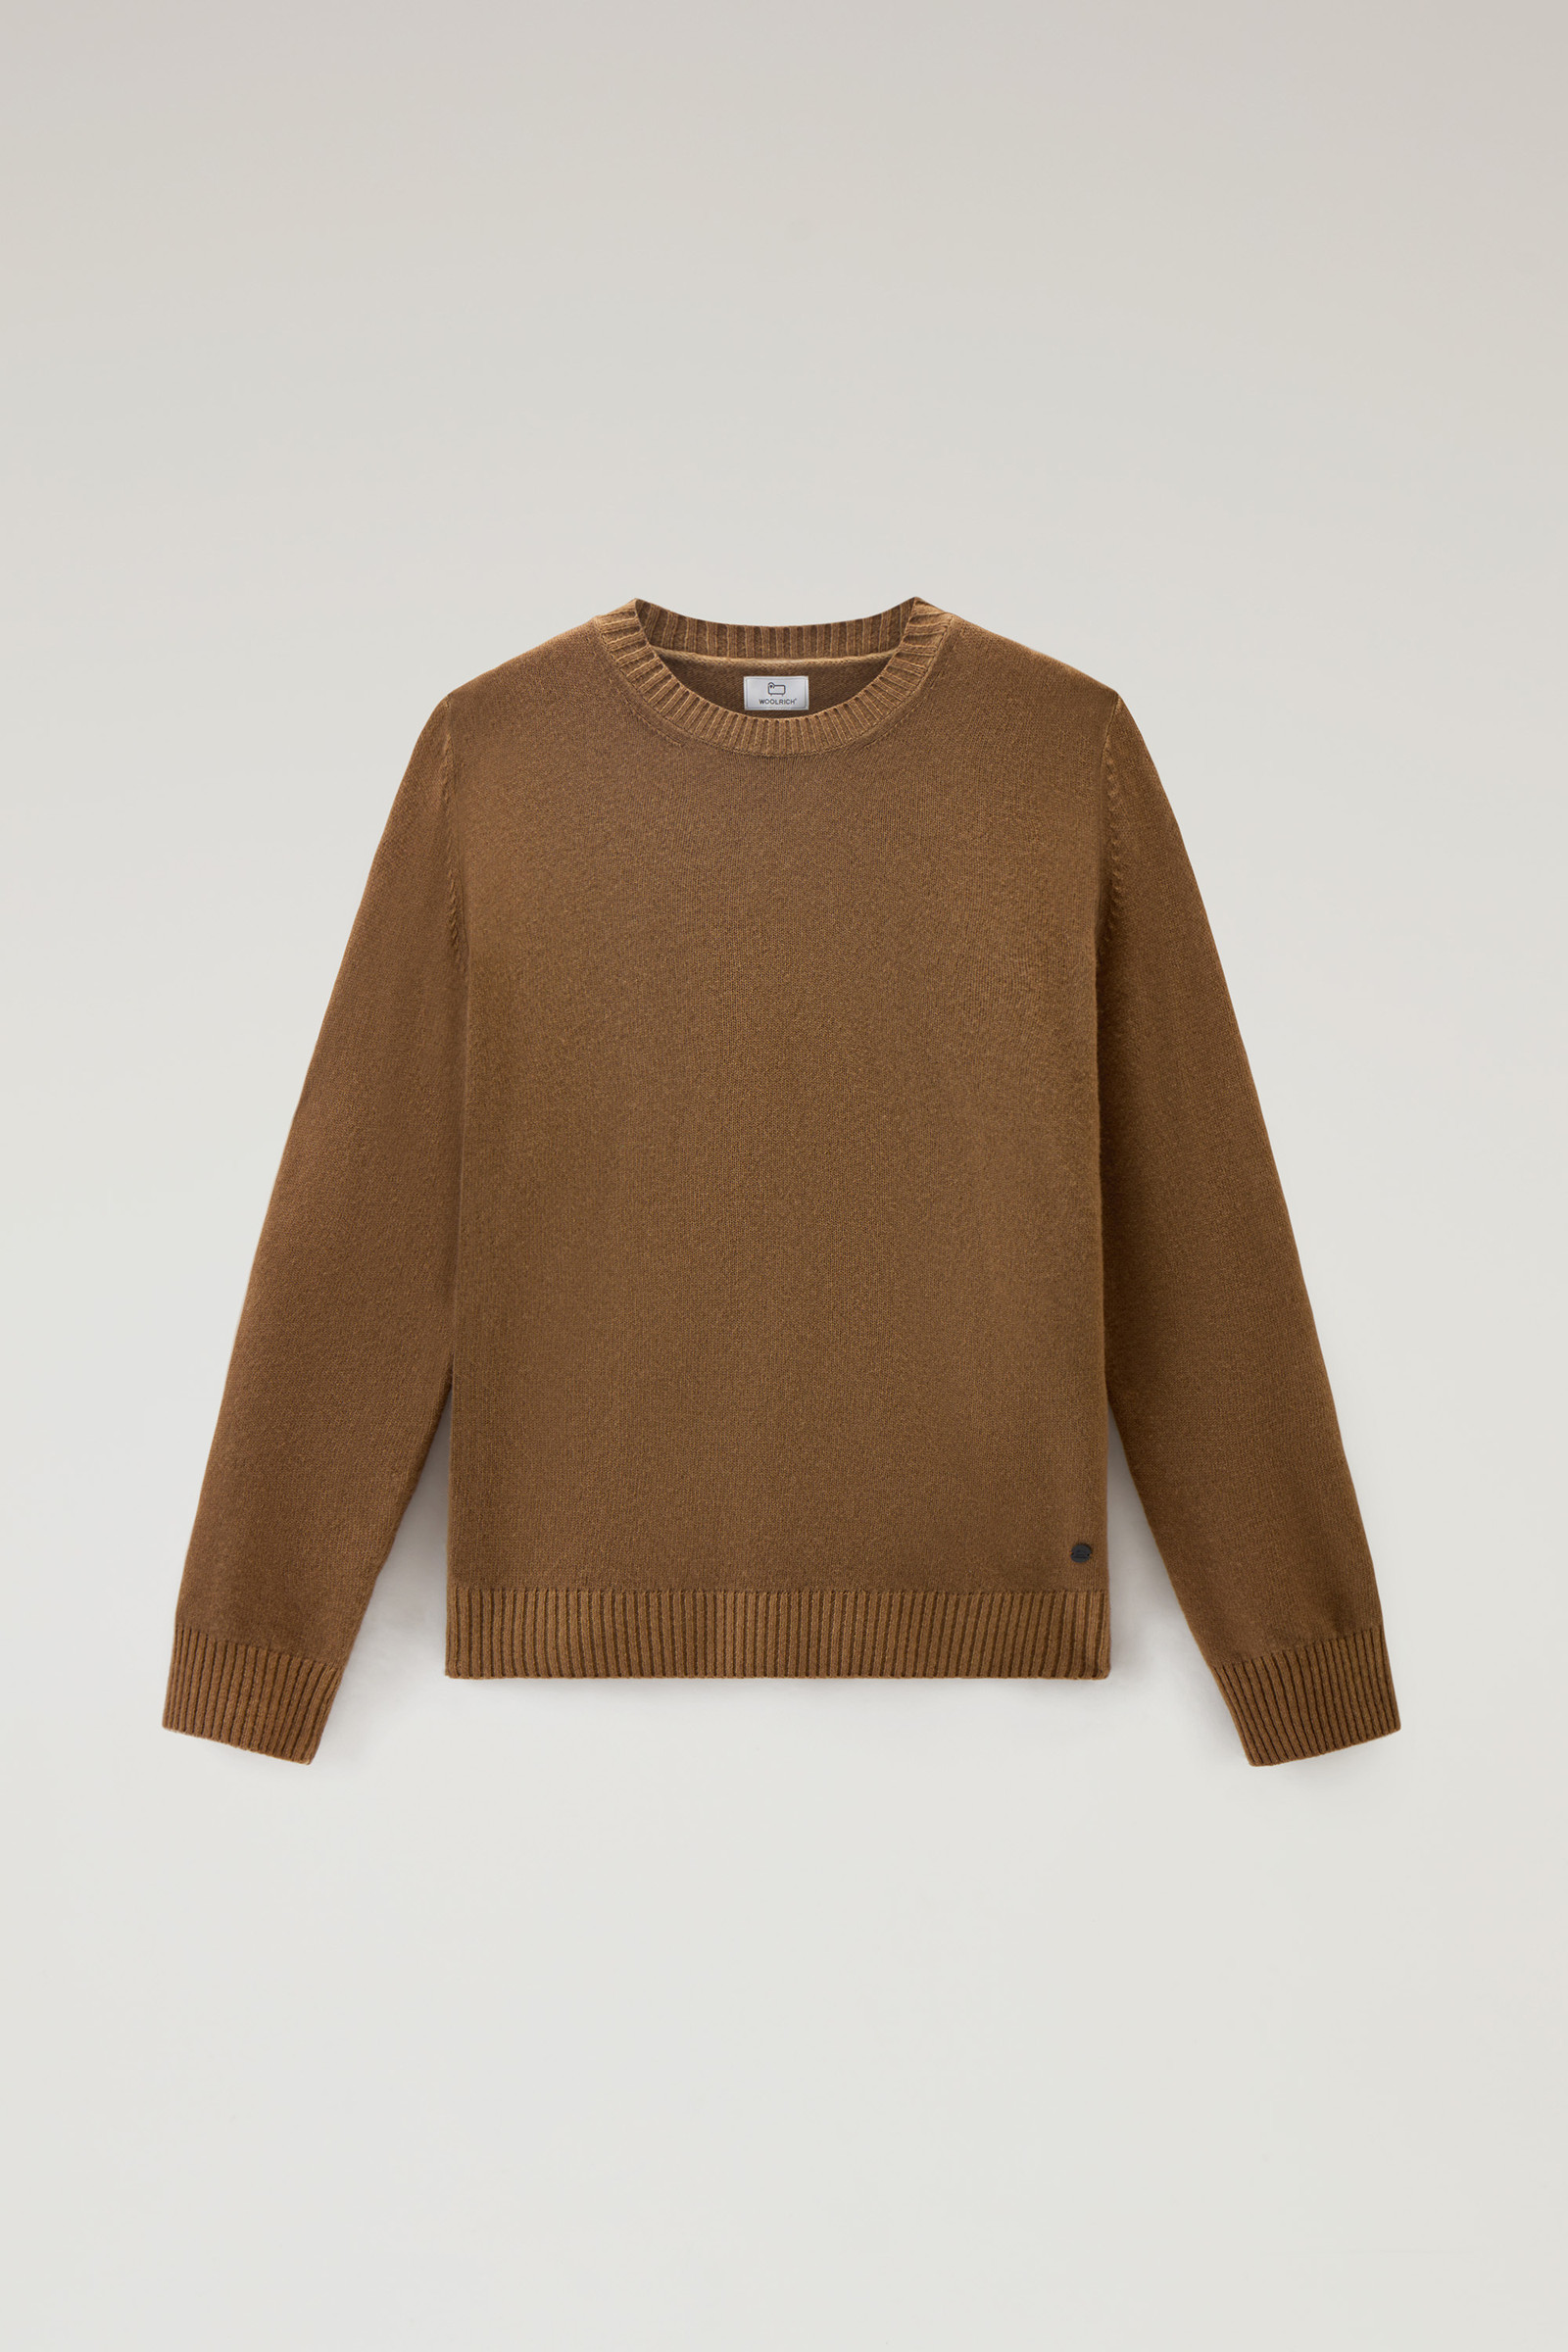 Woolrich, Sweaters